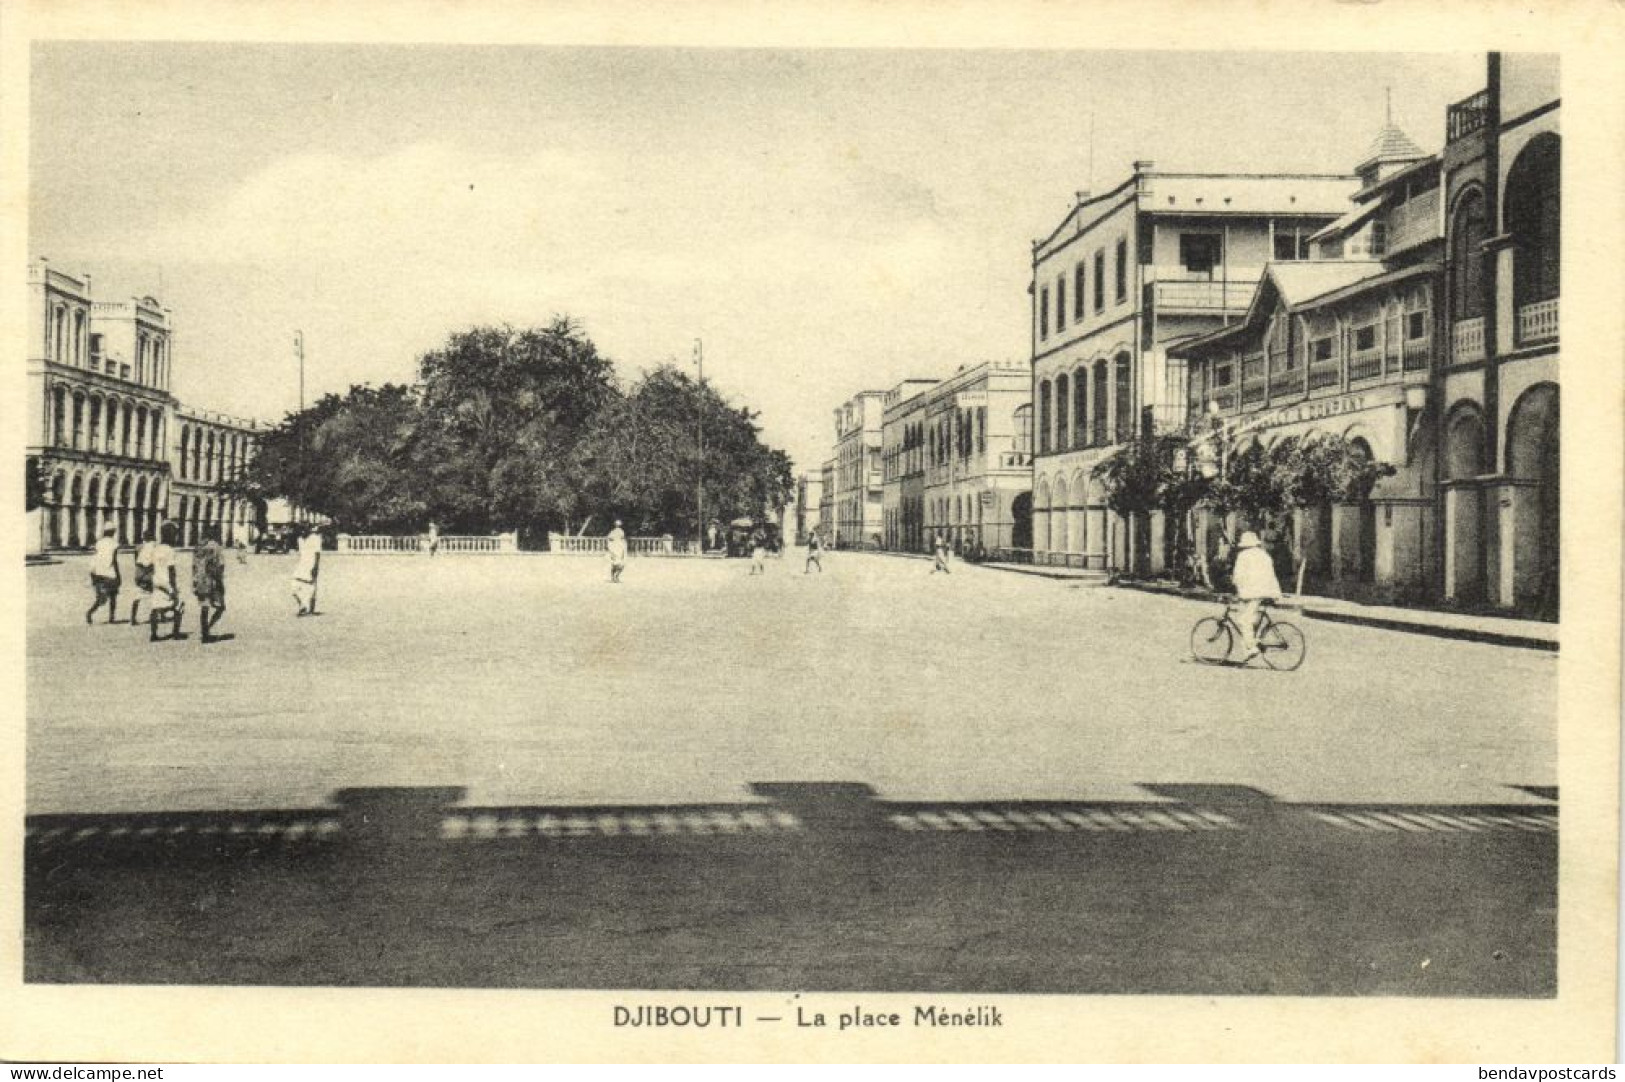 Djibouti, DJIBOUTI, La Place Ménélik, Square, Bike (1930s) Postcard - Djibouti